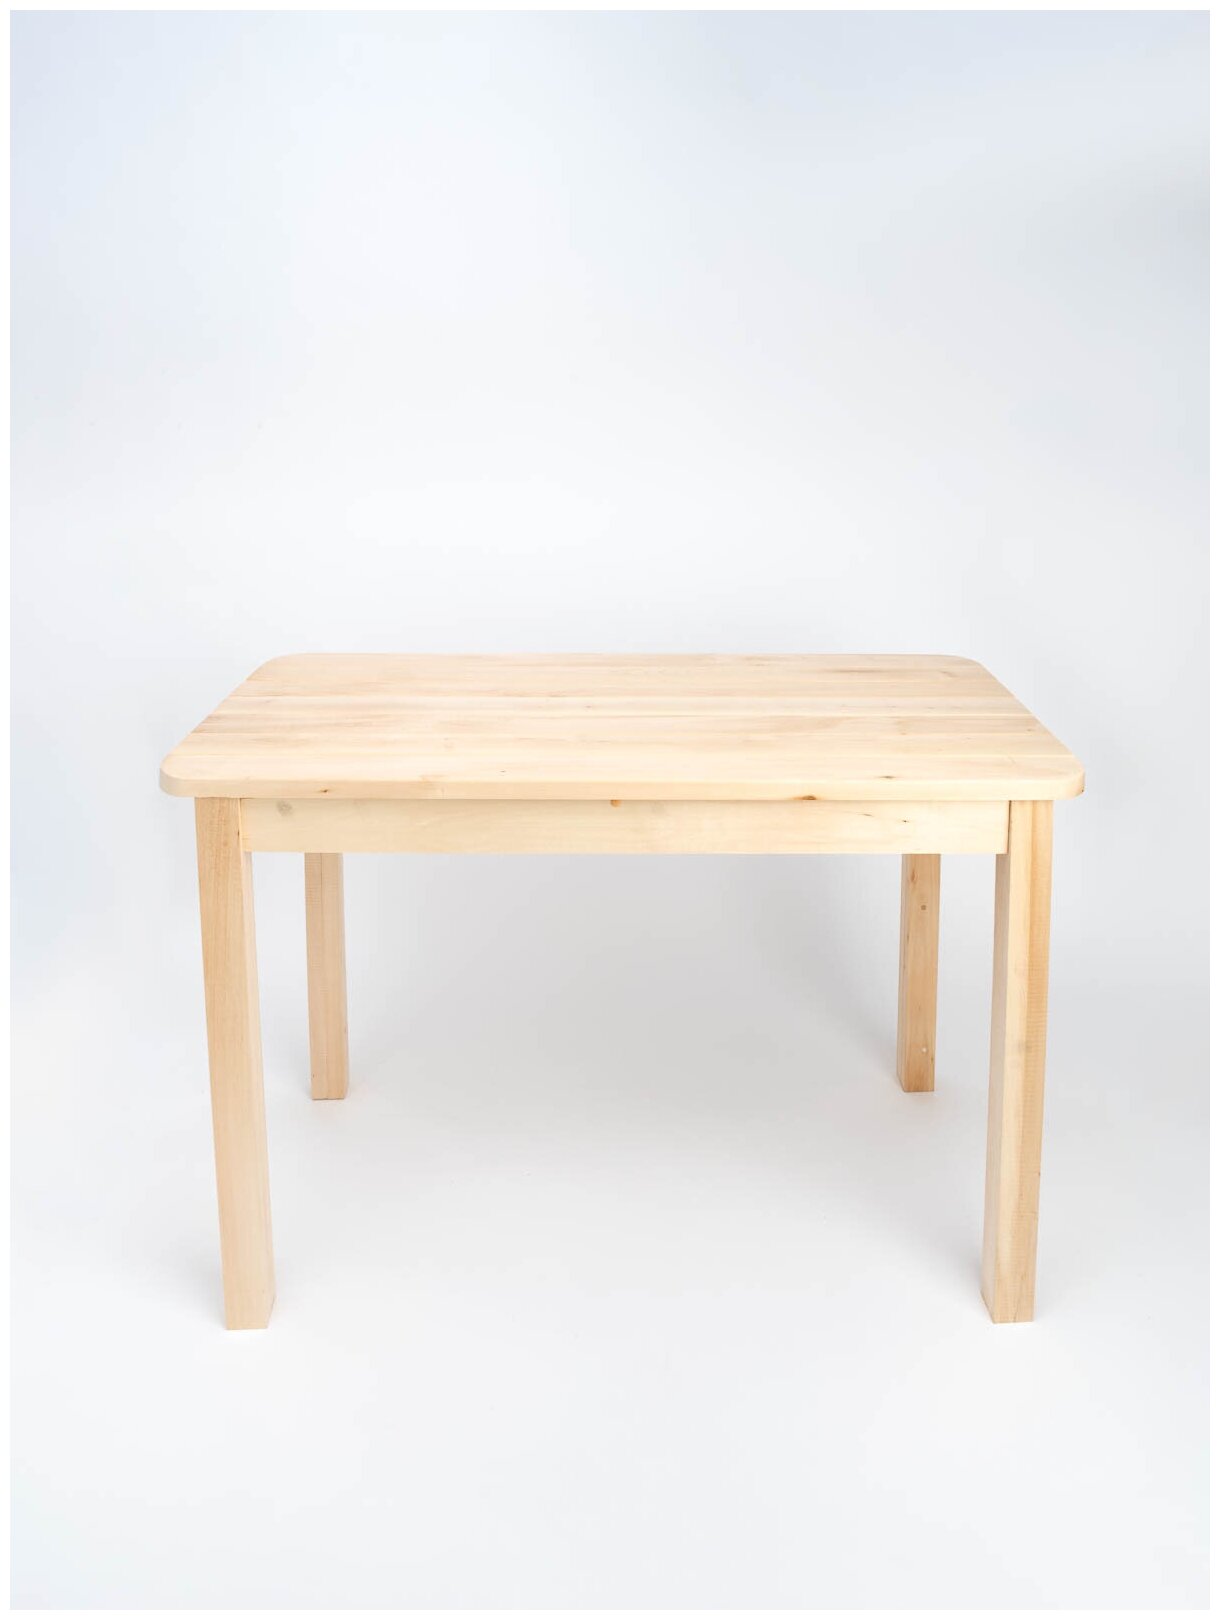 Стол прямоугольный KETT-UP ECO BIG HOLIDAY 120*60см, KU360.120, обеденный, деревянный